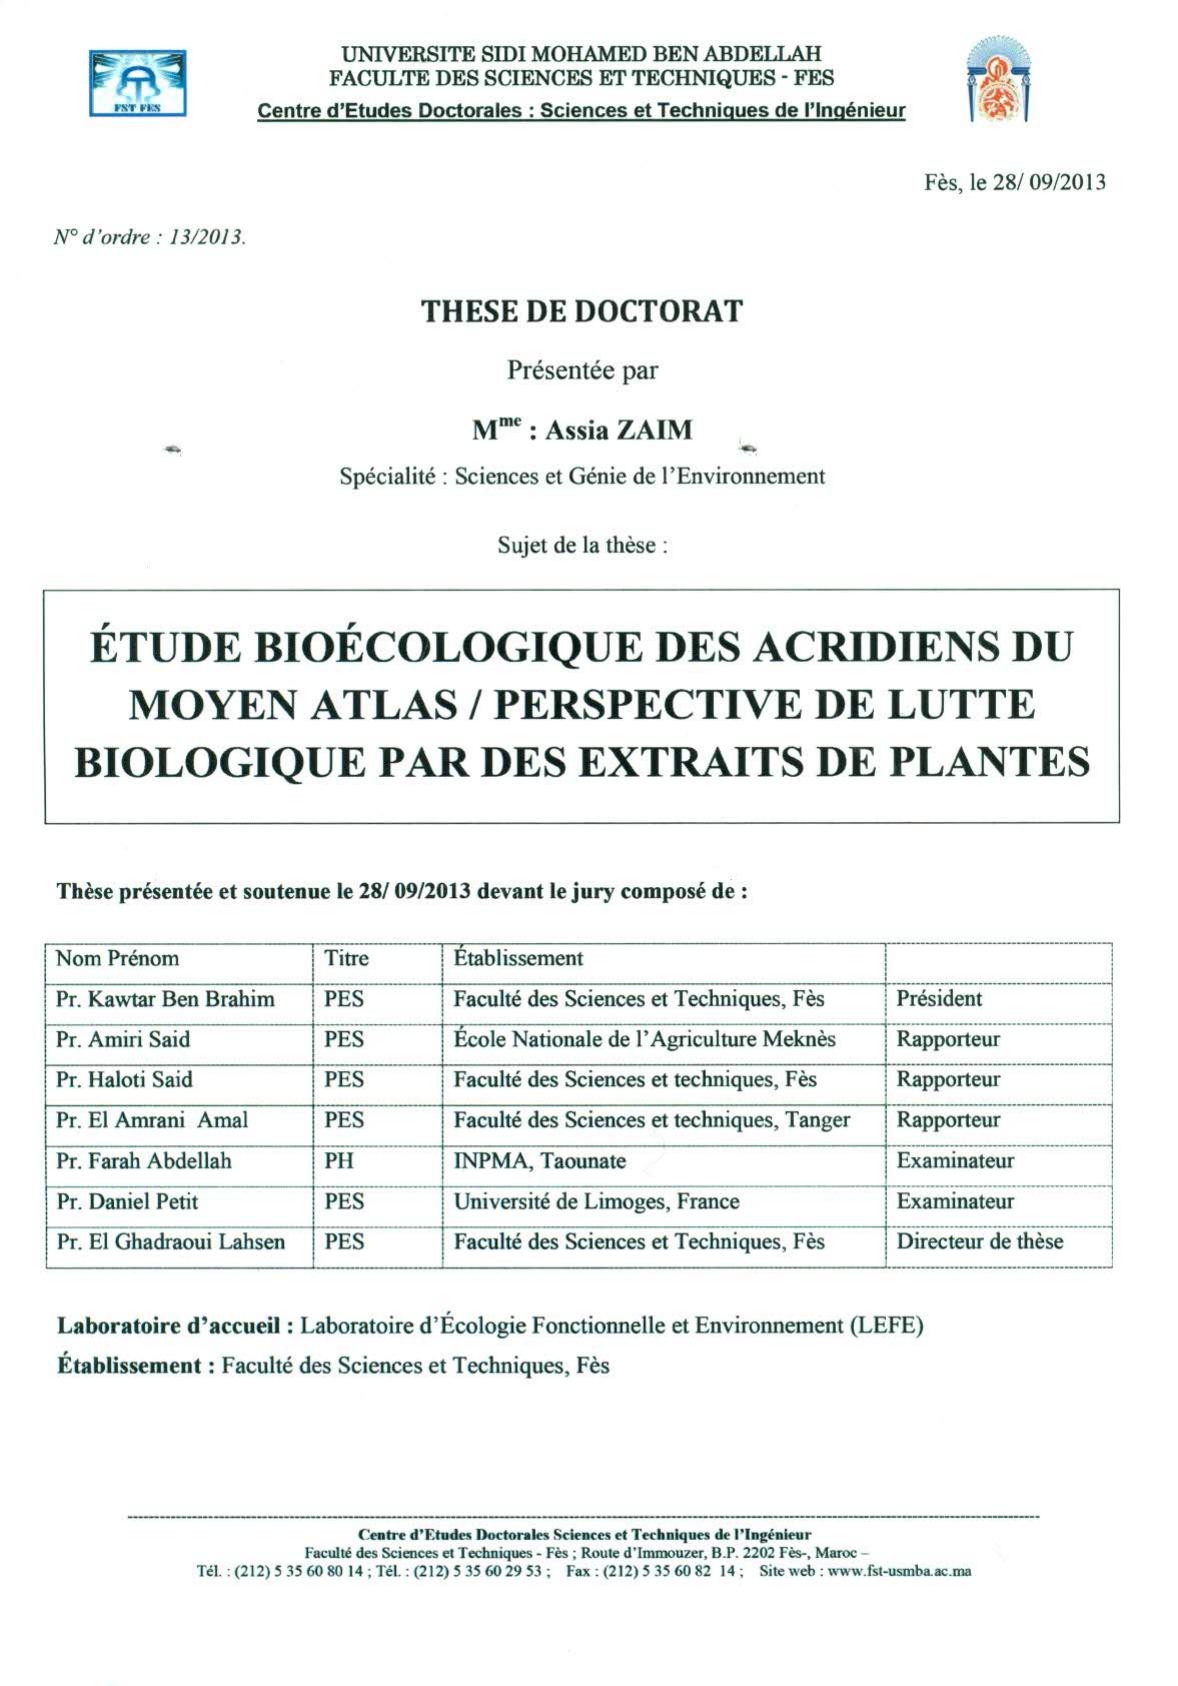 Etude bioécologique des acridiens du Moyen Atlas/ Perspéctive de lutte biologique par des extraits de plantes